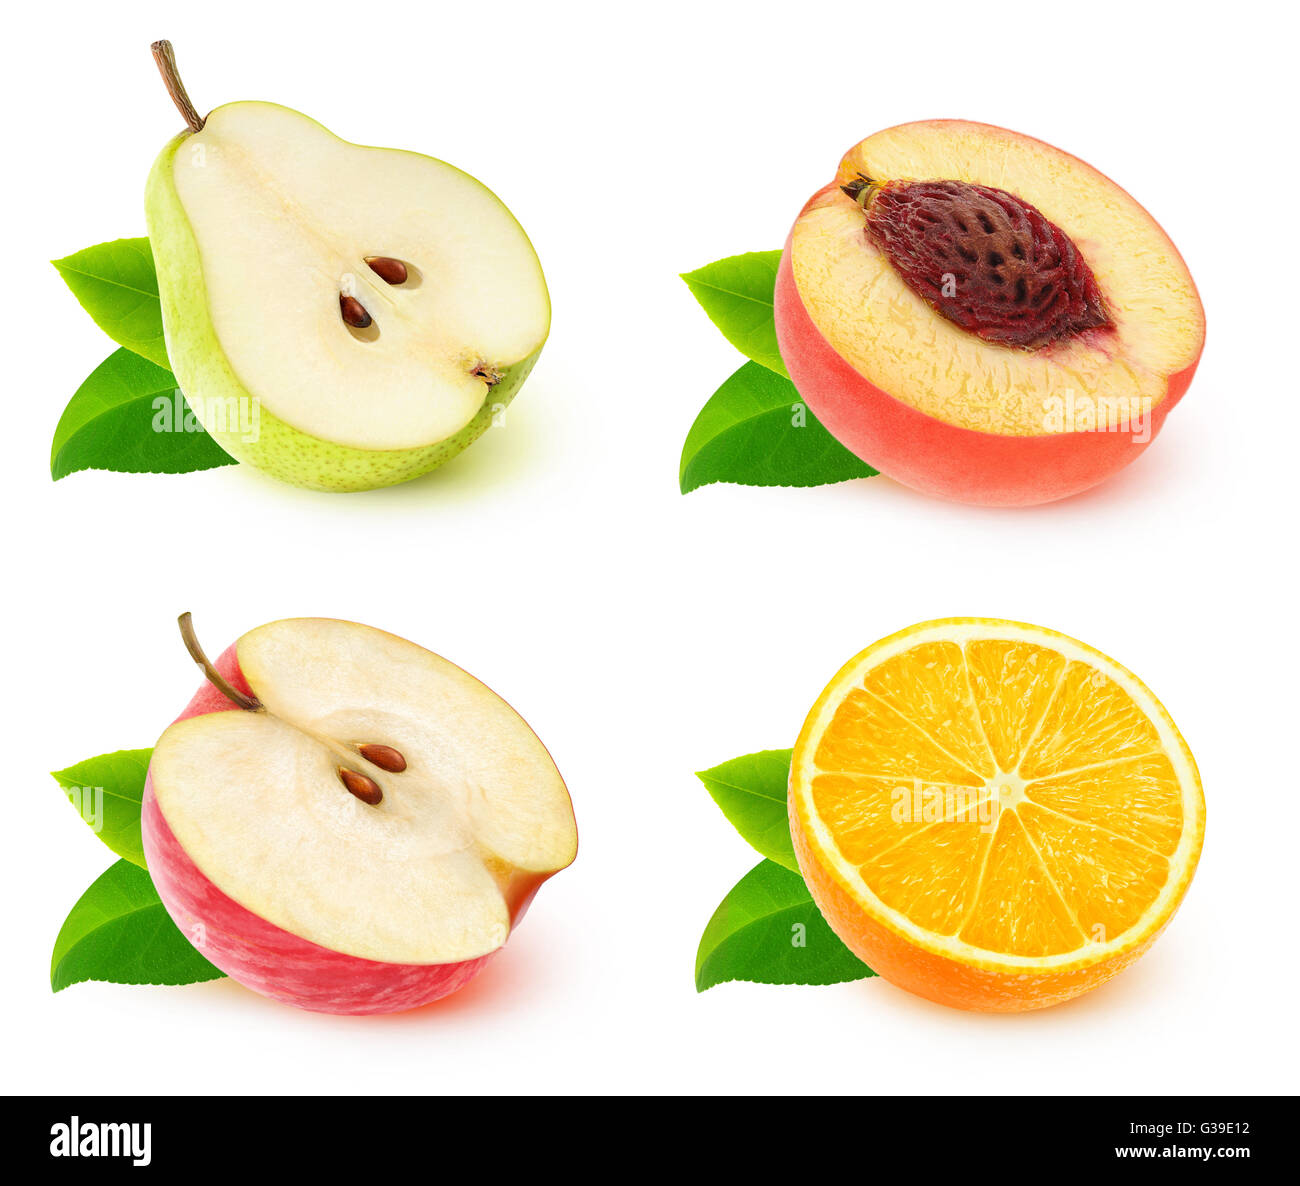 Isolierte Fruchthälften. Sammlung von verschiedenen Früchten halbieren (Apfel, Birne, Orange, Pfirsich) isoliert auf weißem Hintergrund Stockfoto